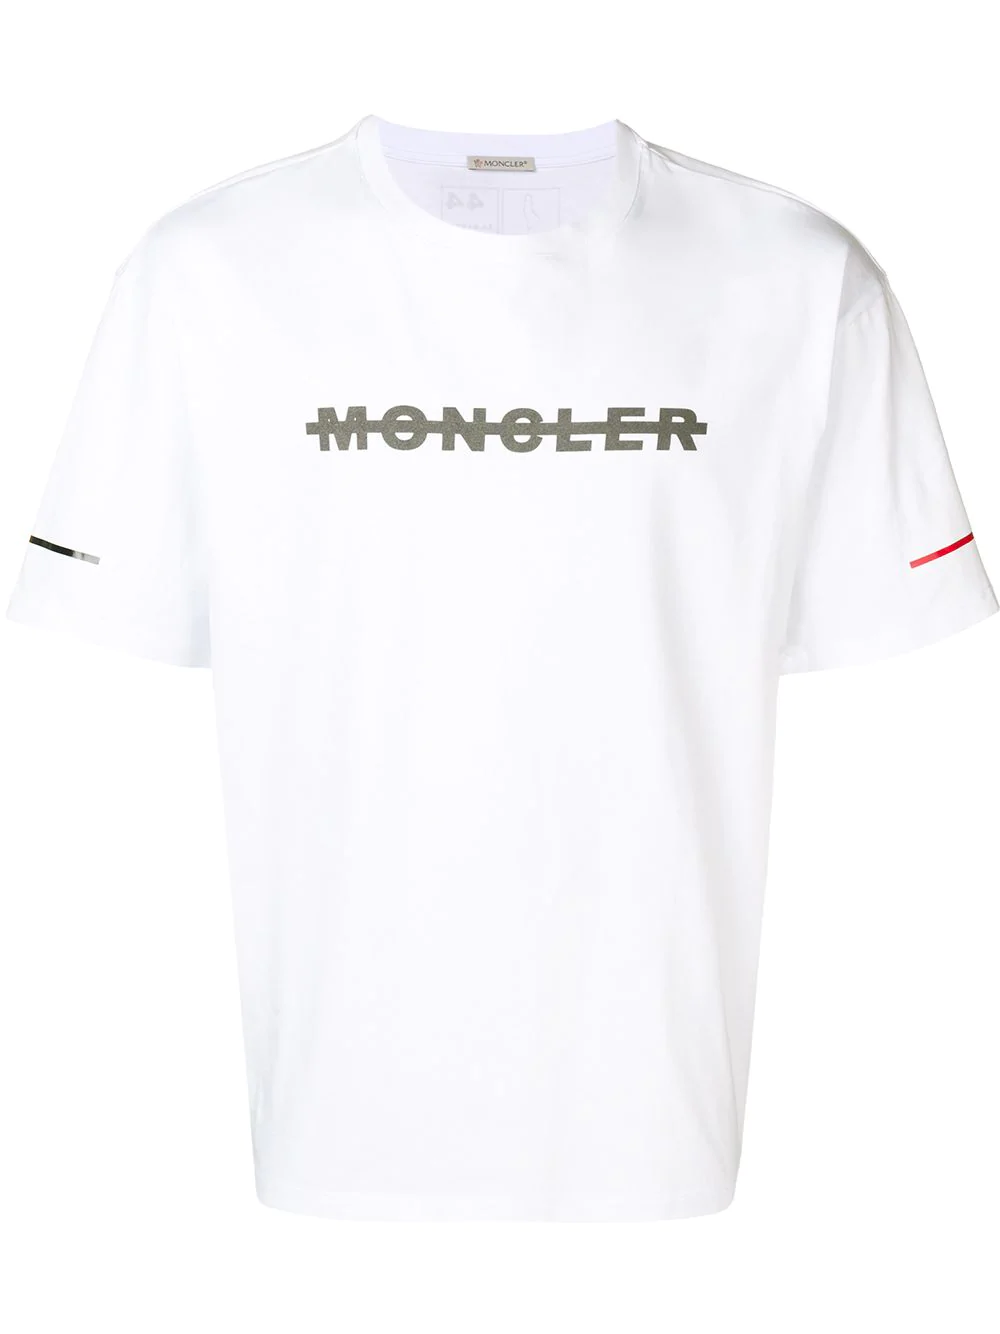 Moncler Crewneck Logo T-Shirt - White In 001 White | ModeSens